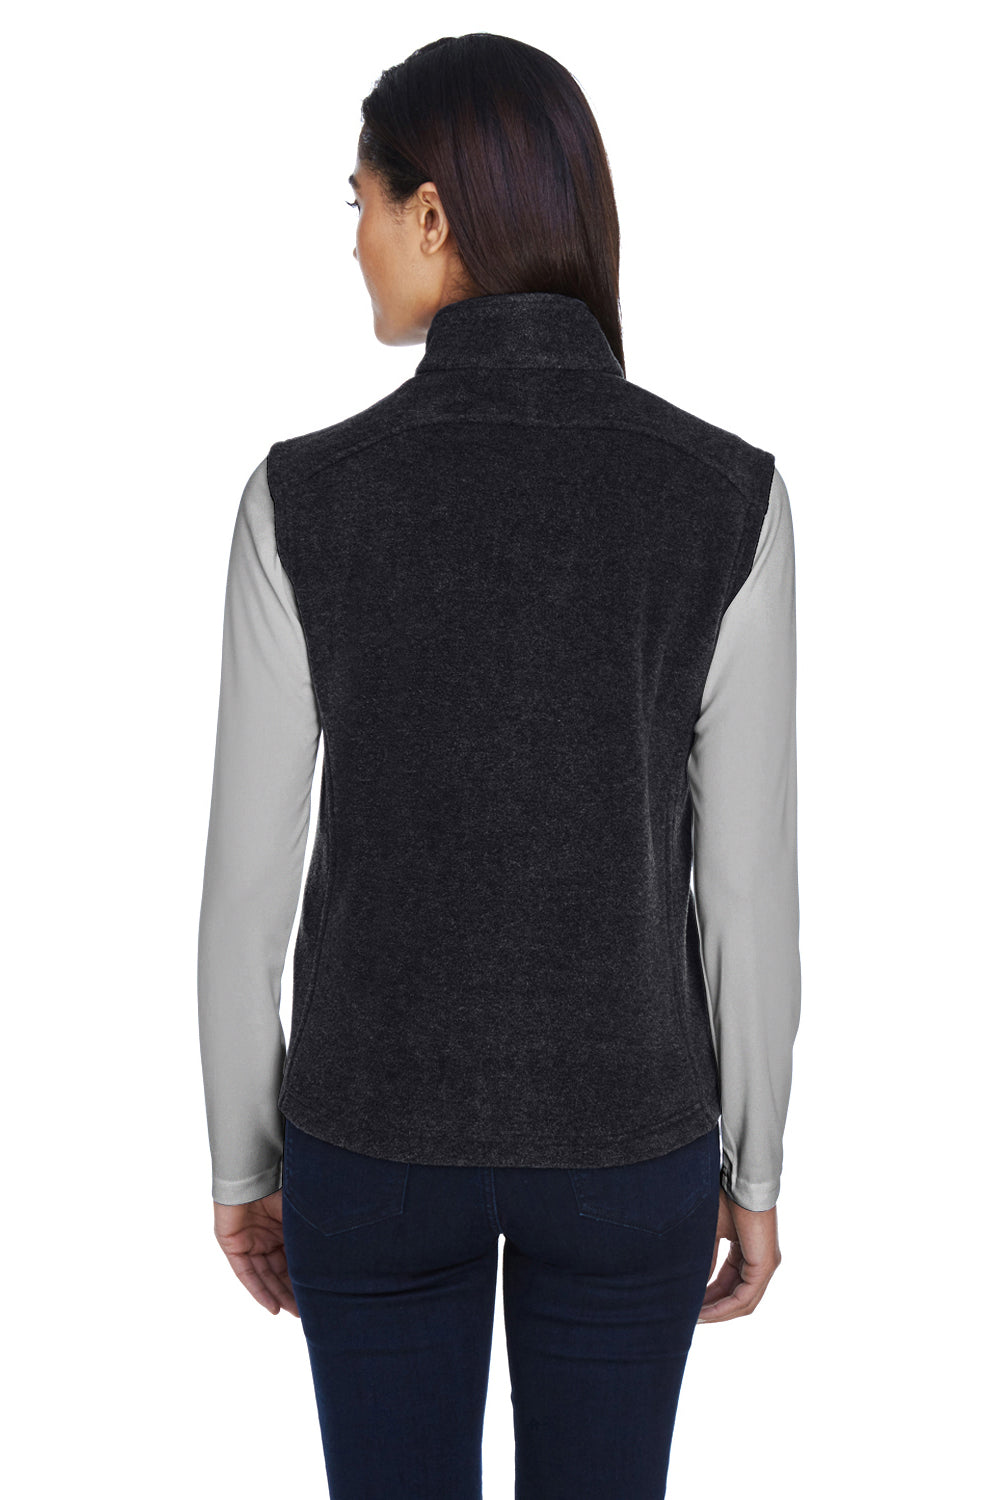 Core 365 78191 Womens Journey Full Zip Fleece Vest Heather Charcoal Grey Back